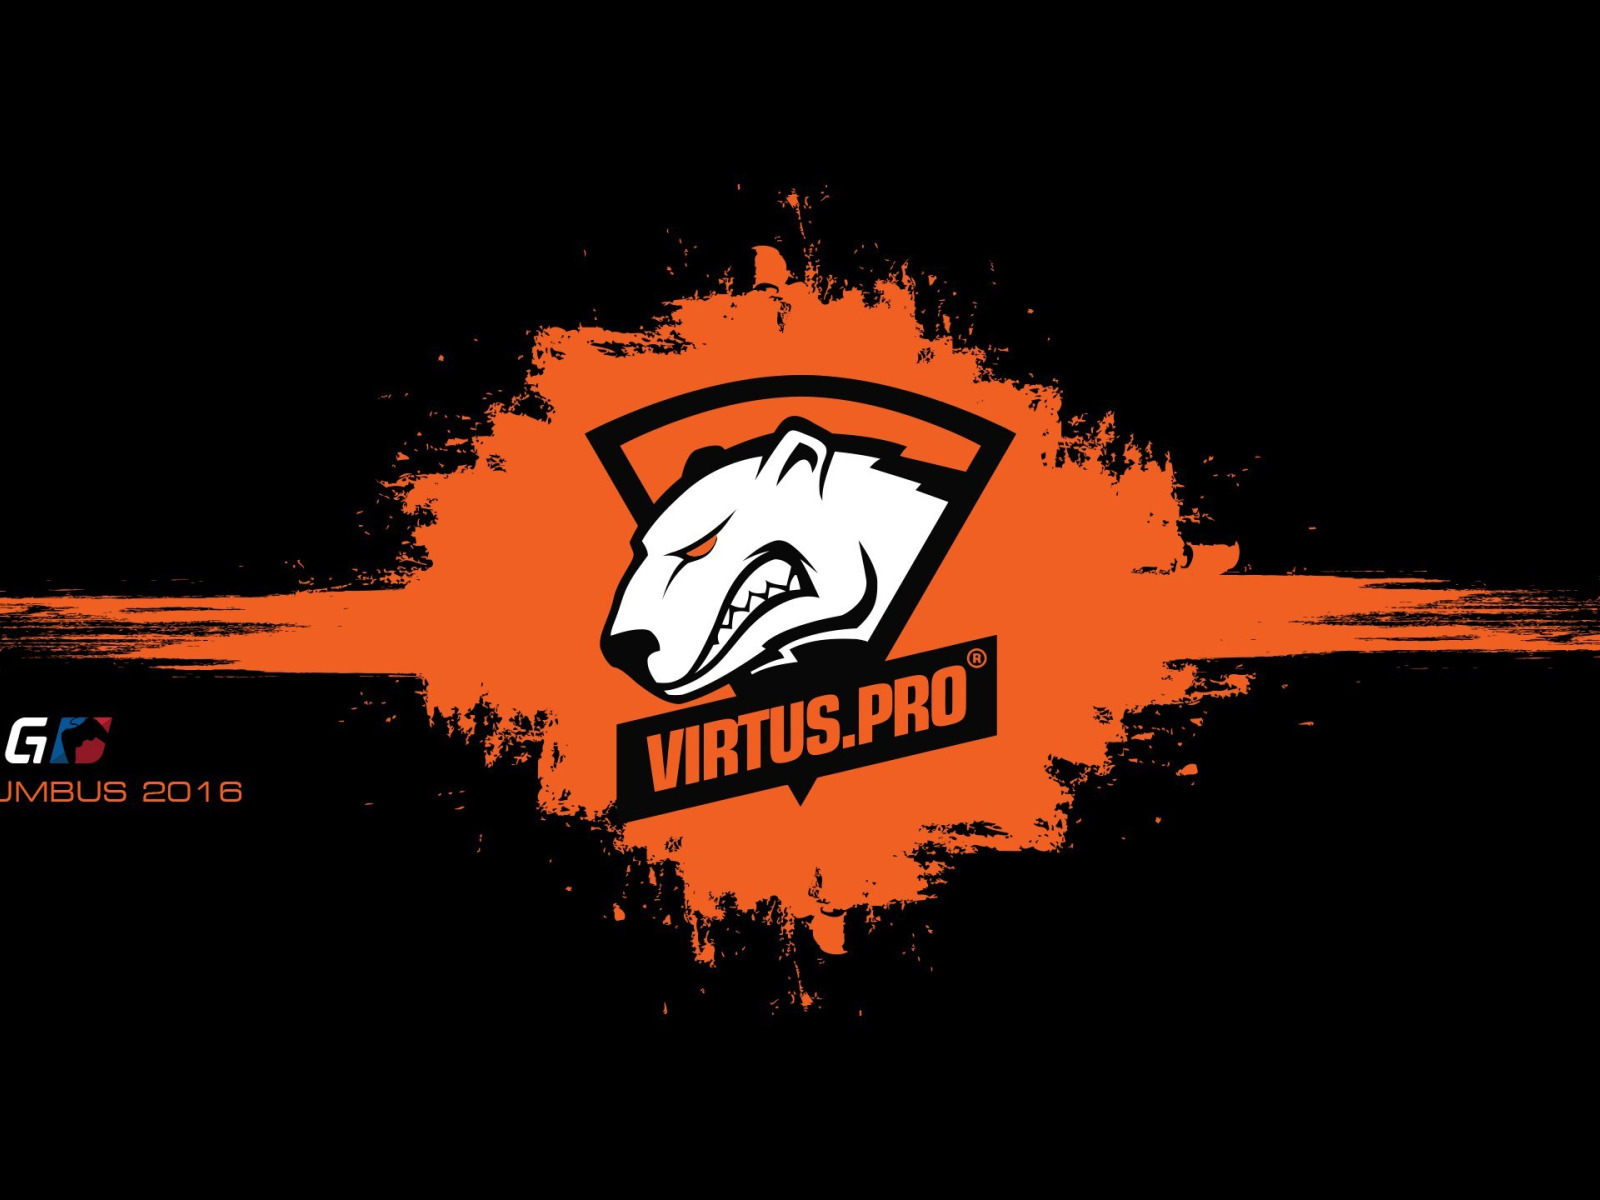 Virtus pro blacklist